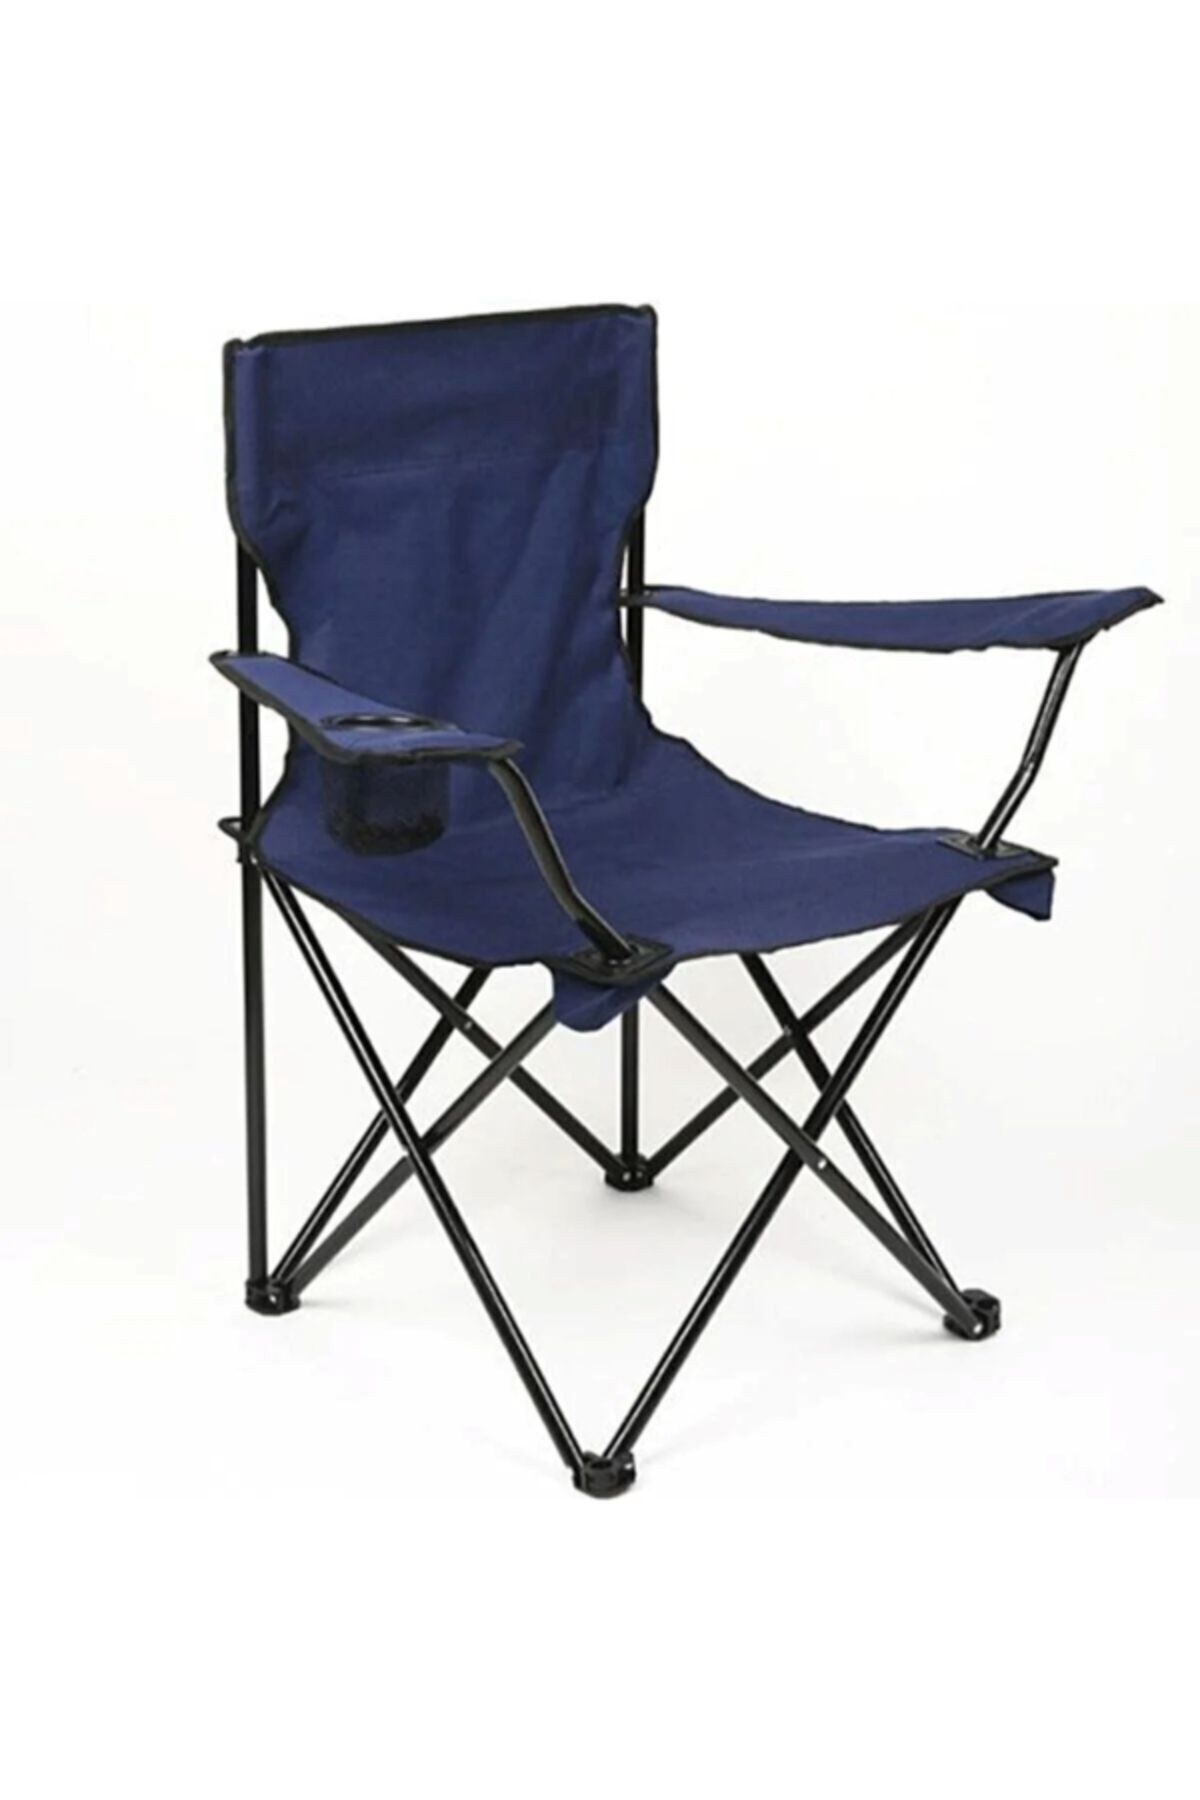 Ata Katlanır Çantalı Kamp Sandalyesi mavı